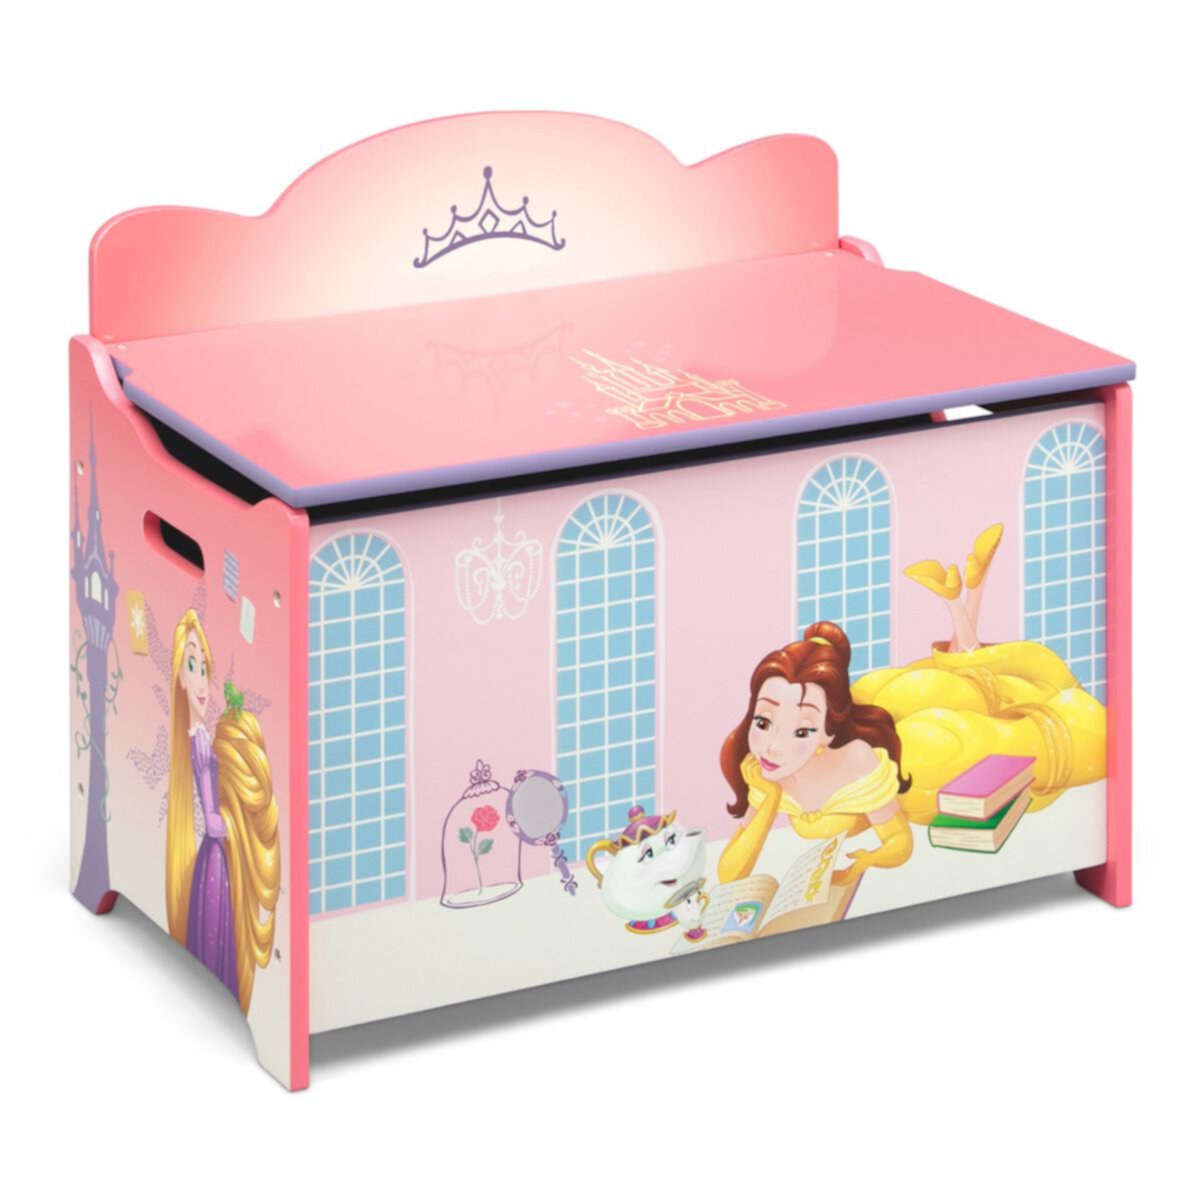 Disney Princess Deluxe Toy Box by Delta Children Delta Children